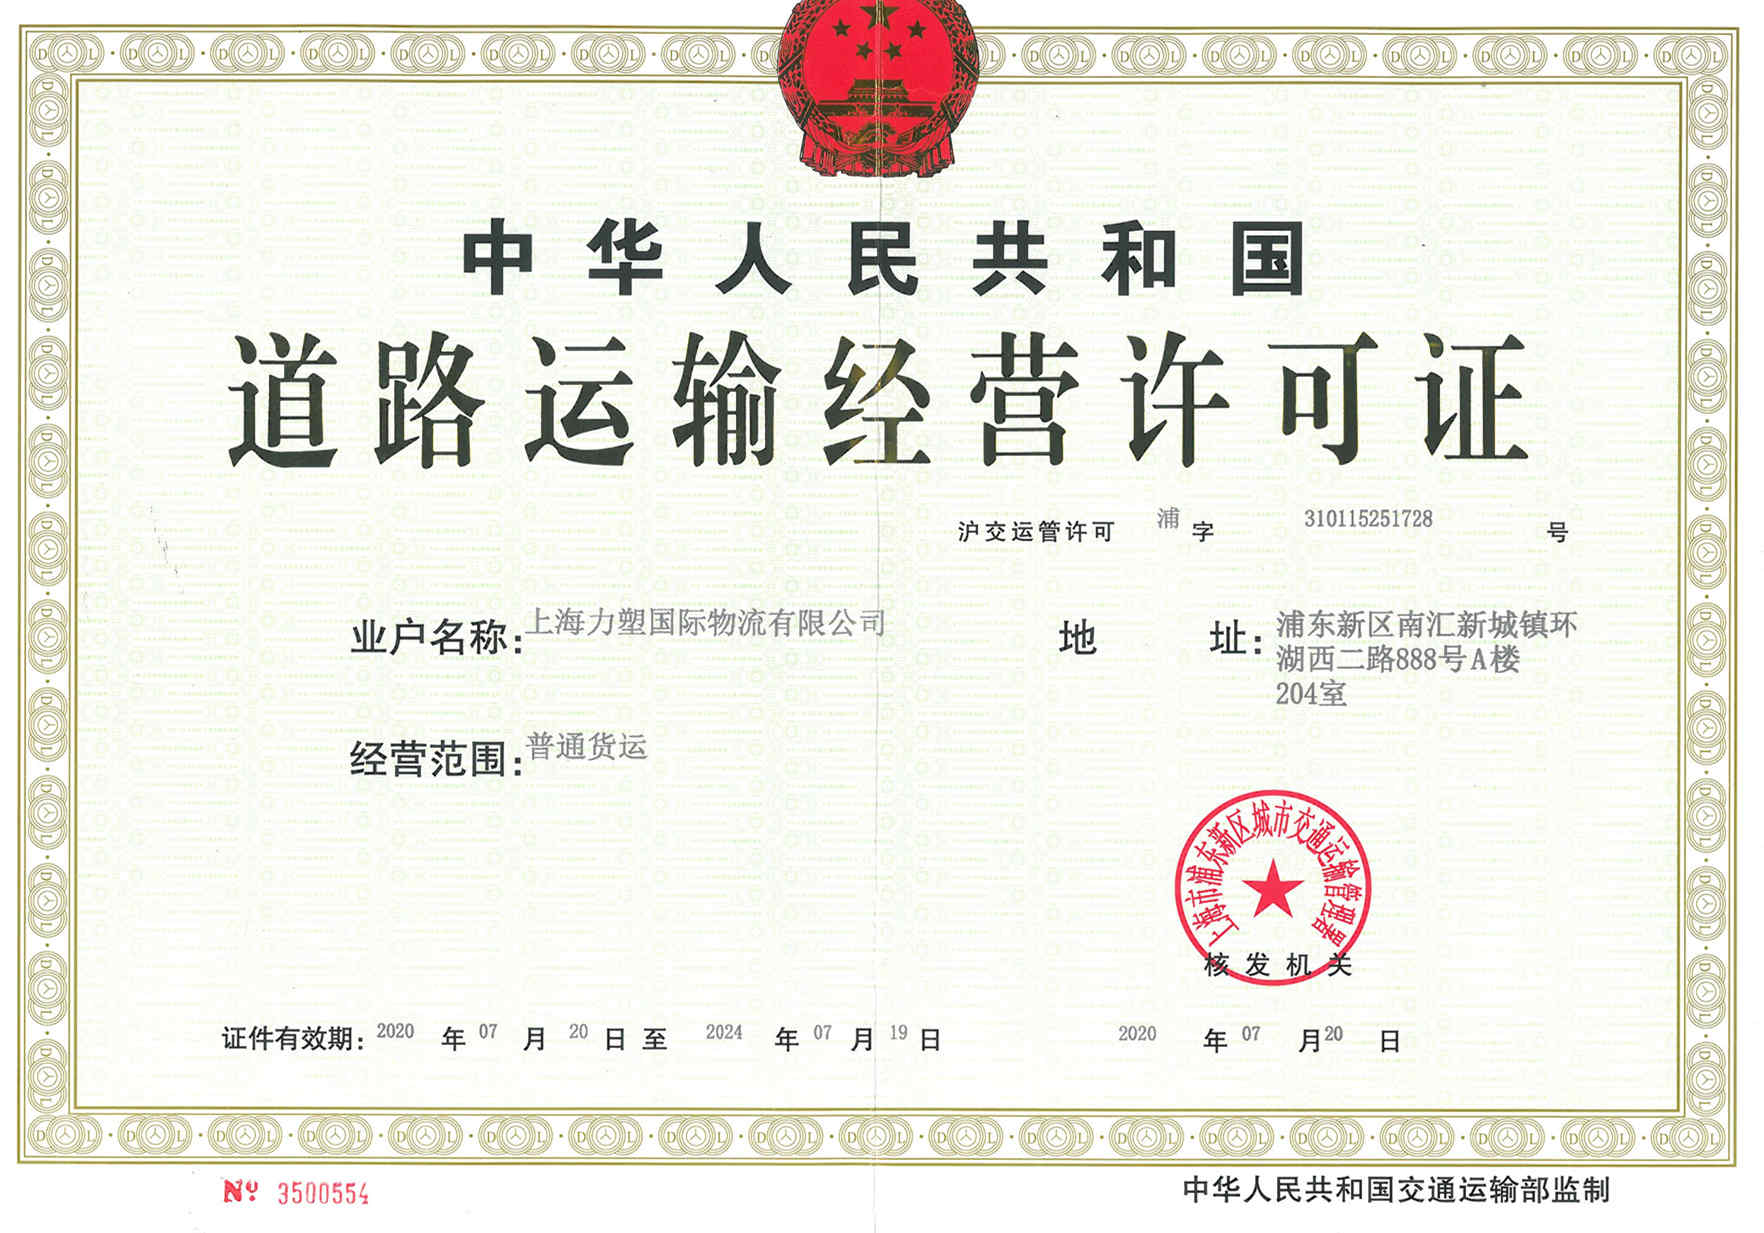 上海力塑国际物流有限公司道路运输经营许可证